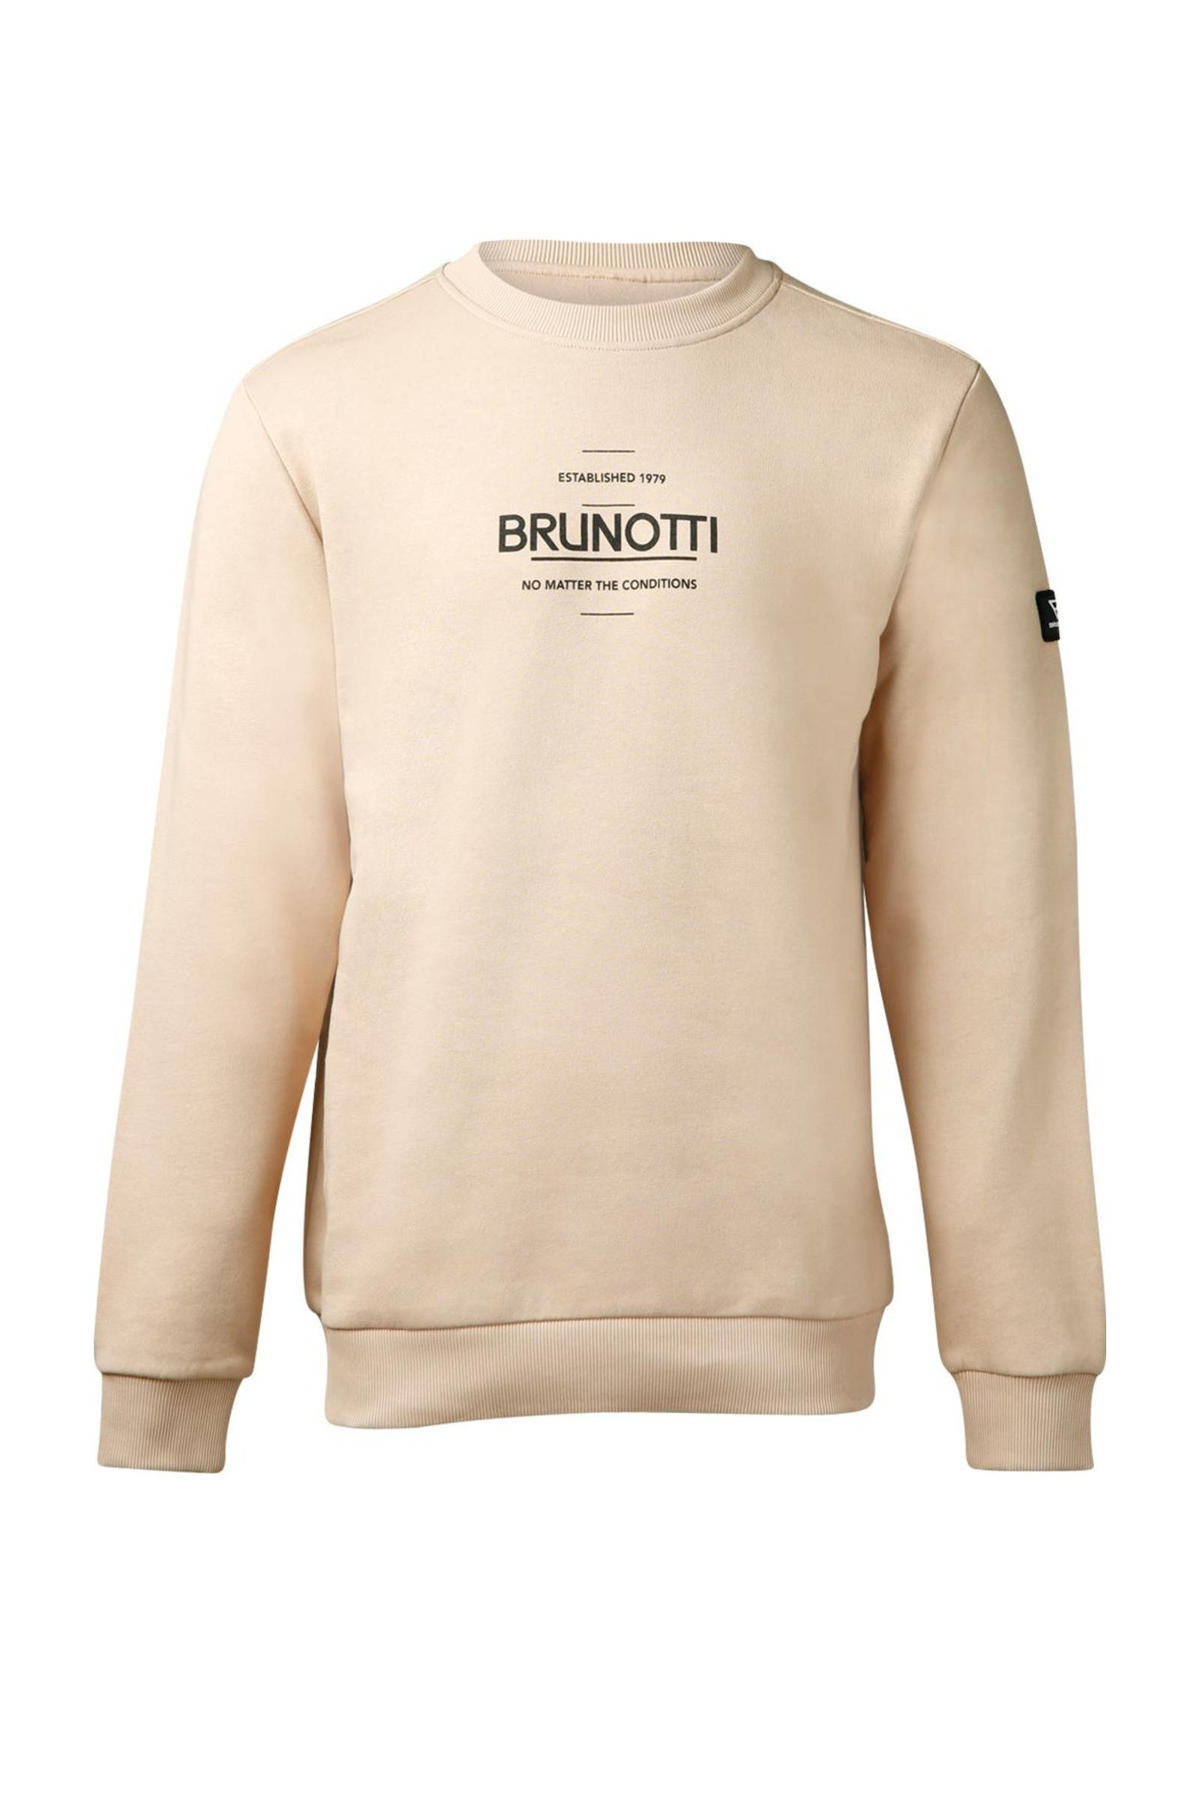 Stiptheid pijn doen Uithoudingsvermogen Brunotti sweater van biologisch katoen zand | wehkamp